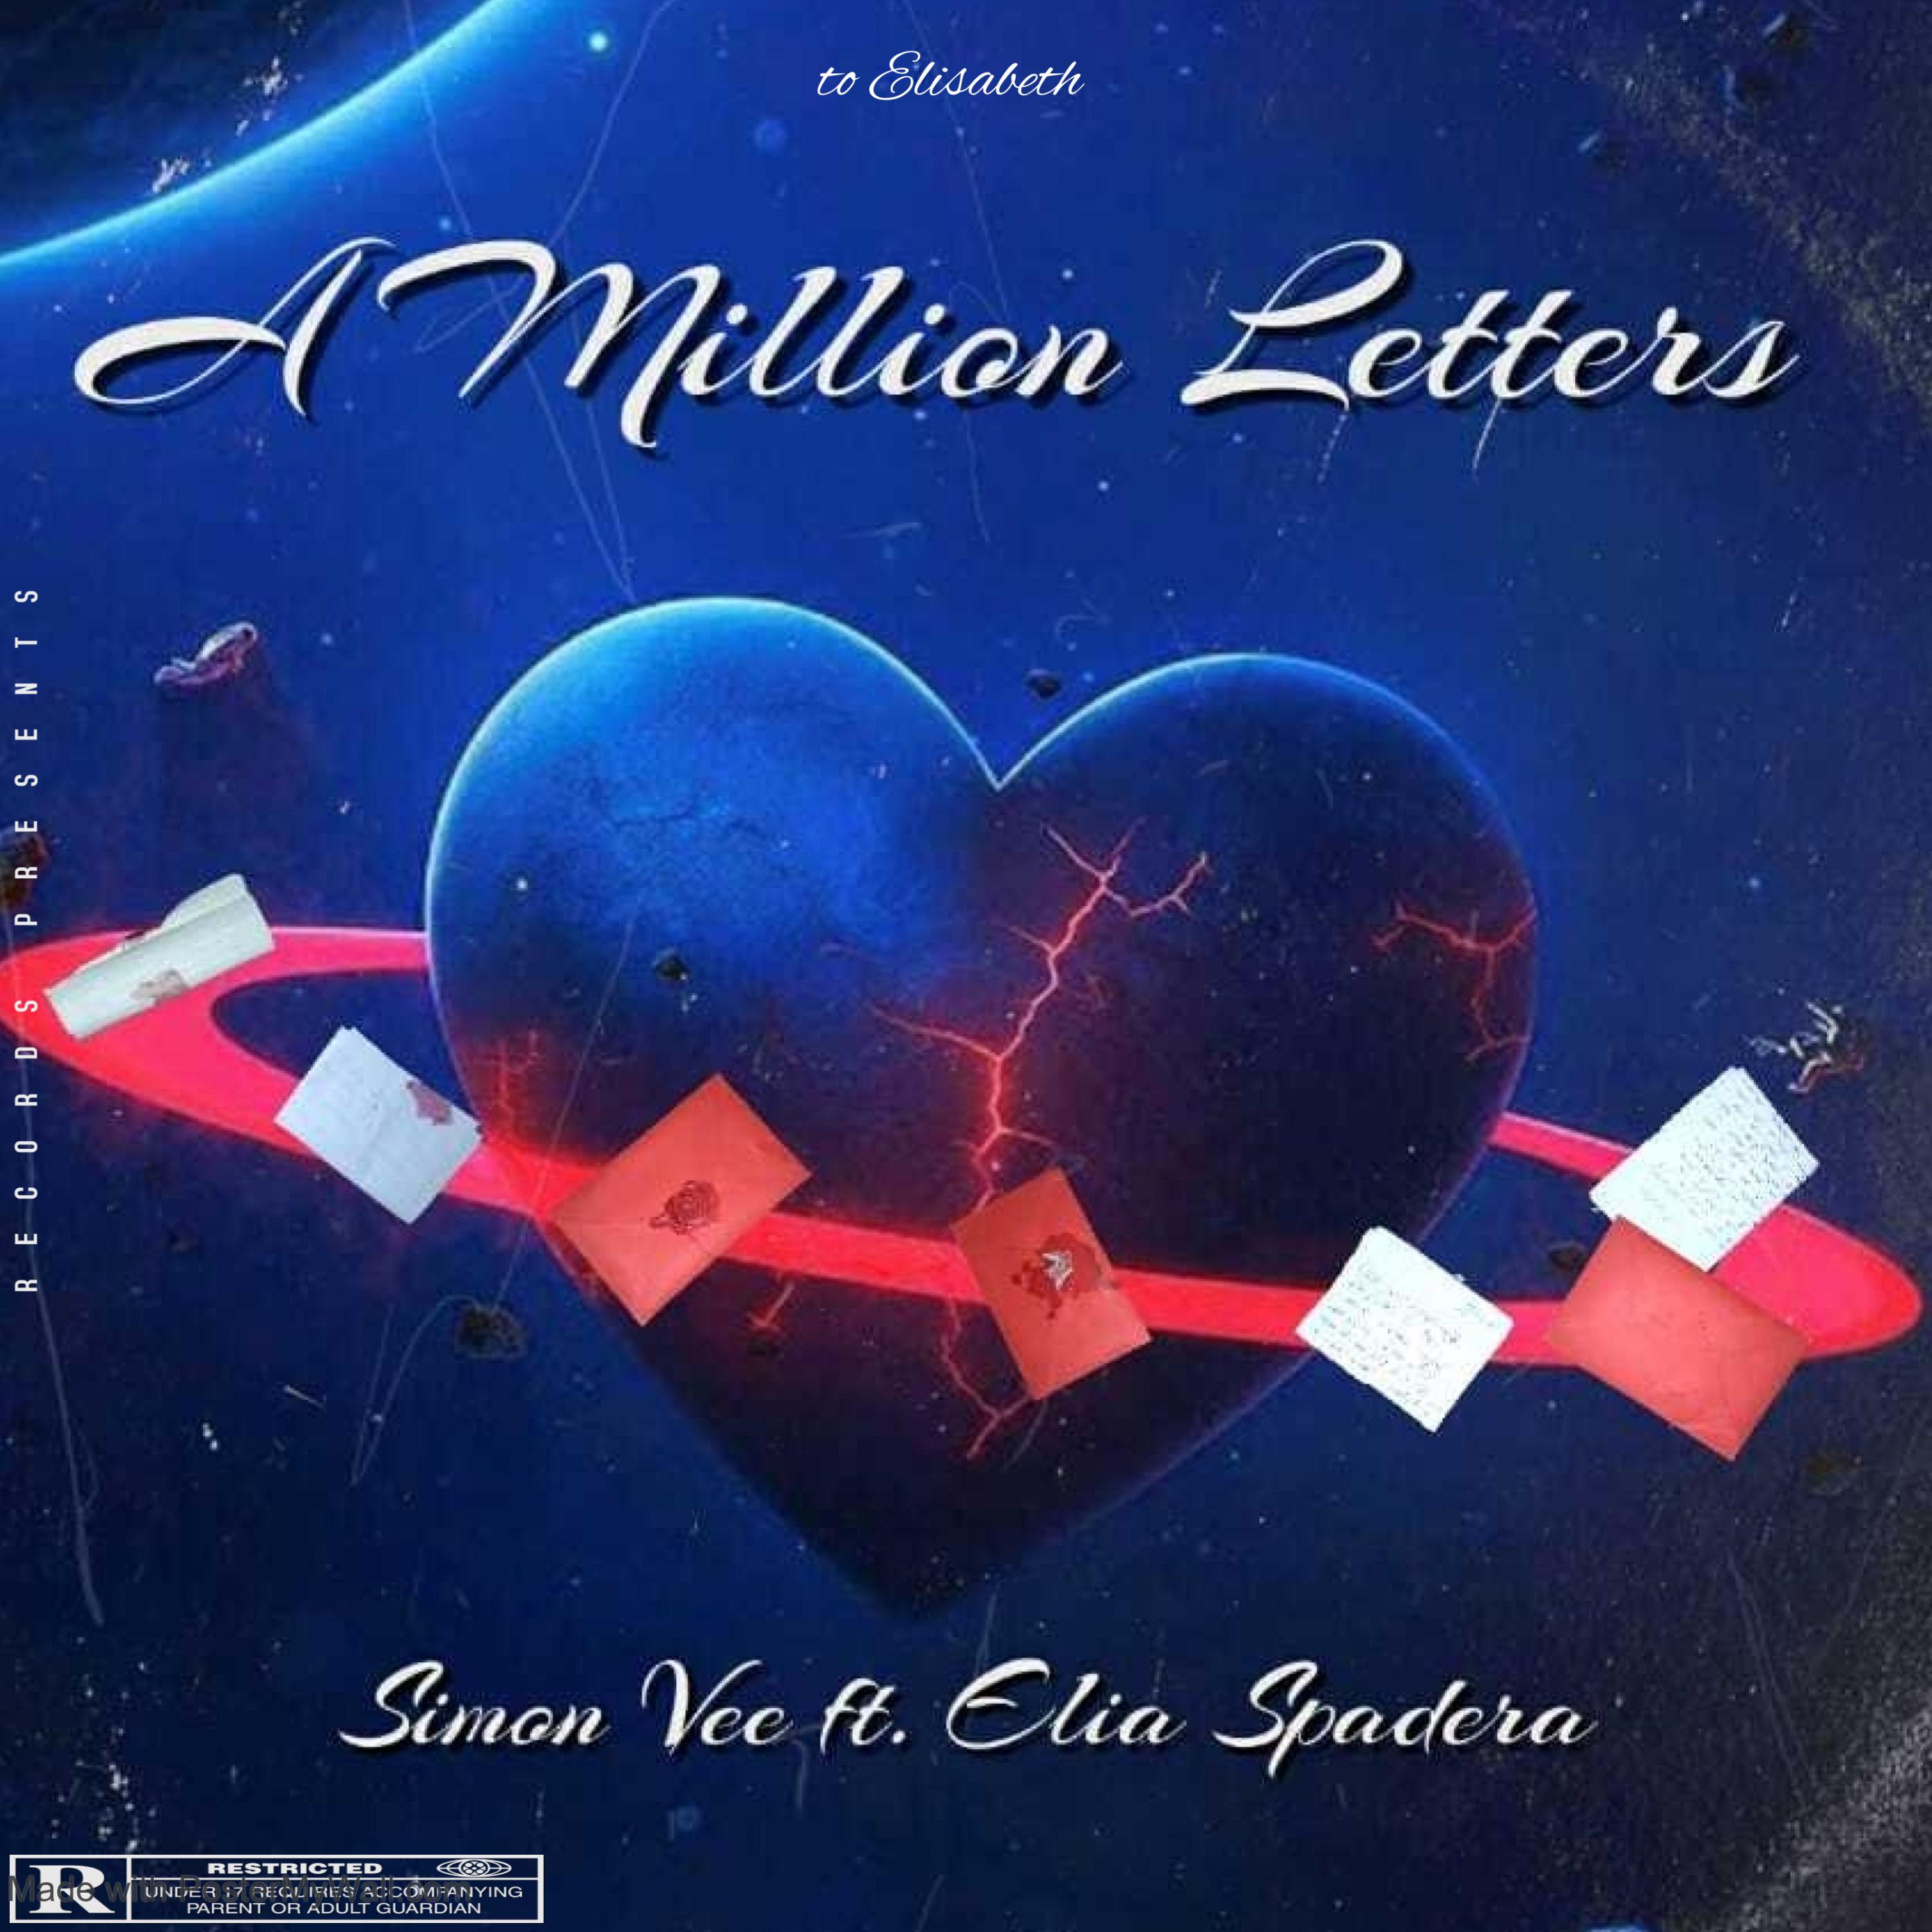 Simon Vee - A Million Letters